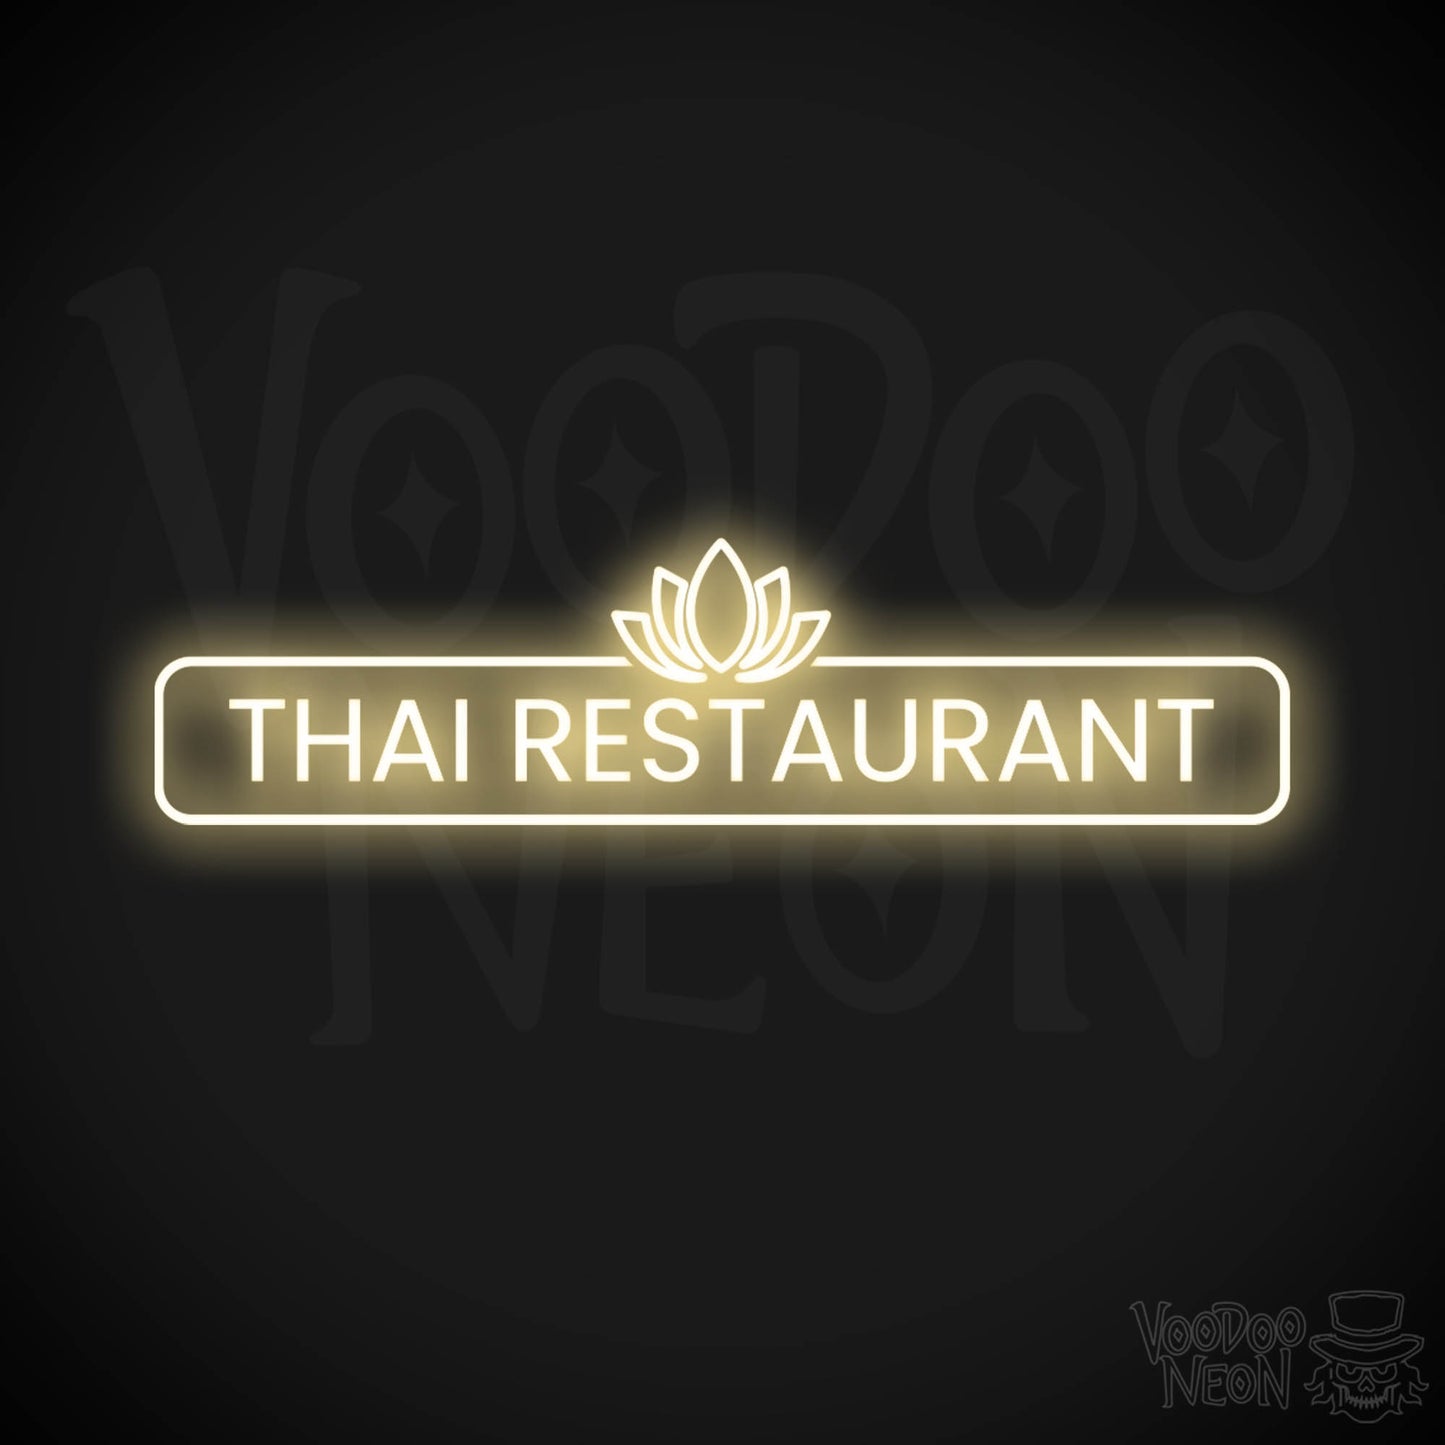 Thai Restaurant LED Neon - Warm White